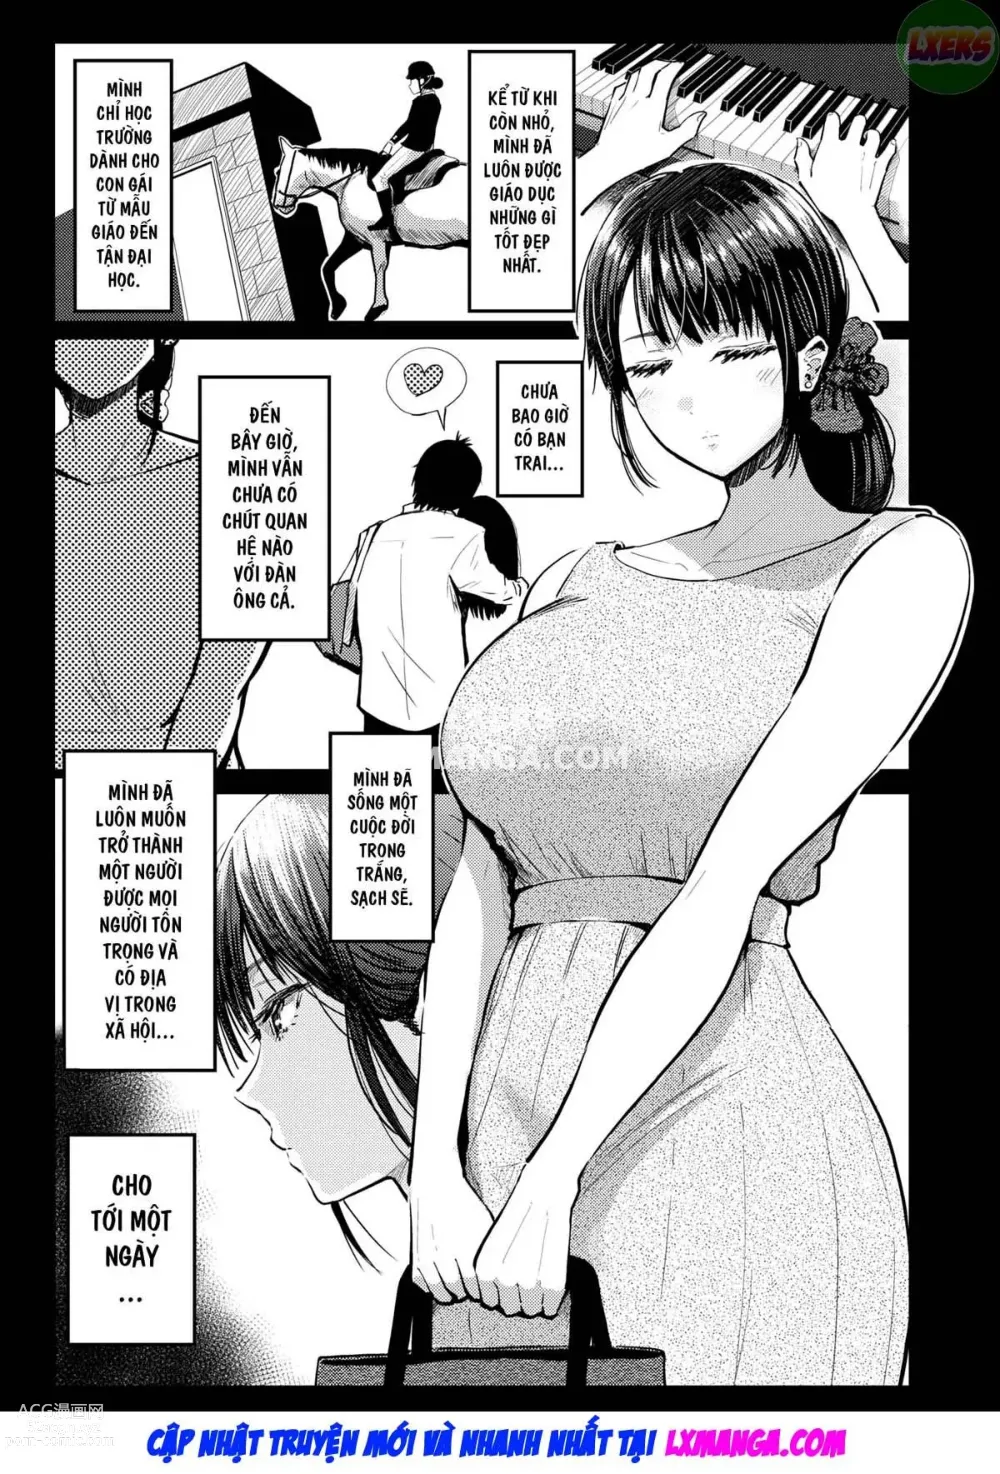 Page 27 of doujinshi Vợ Tác giả Ero Manga